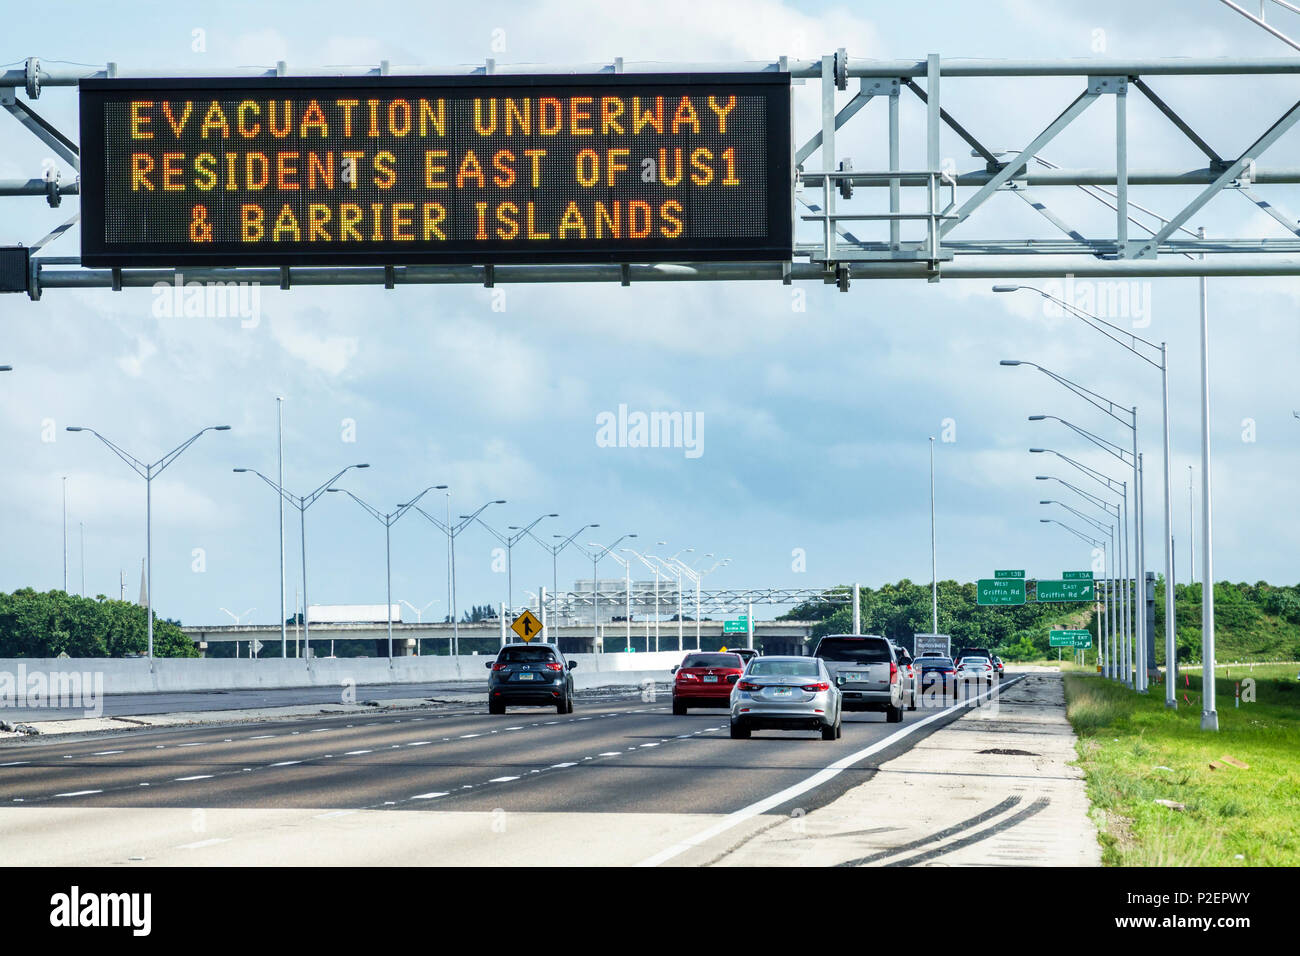 Miami Florida, der sich der Vorbereitungs-Unwrack Irma nähert, die Interstate I-75 I75, elektronisches Schild, Evakuierung unterwegs Barriere Inseln östlich von US1, Autobahn-Traff Stockfoto